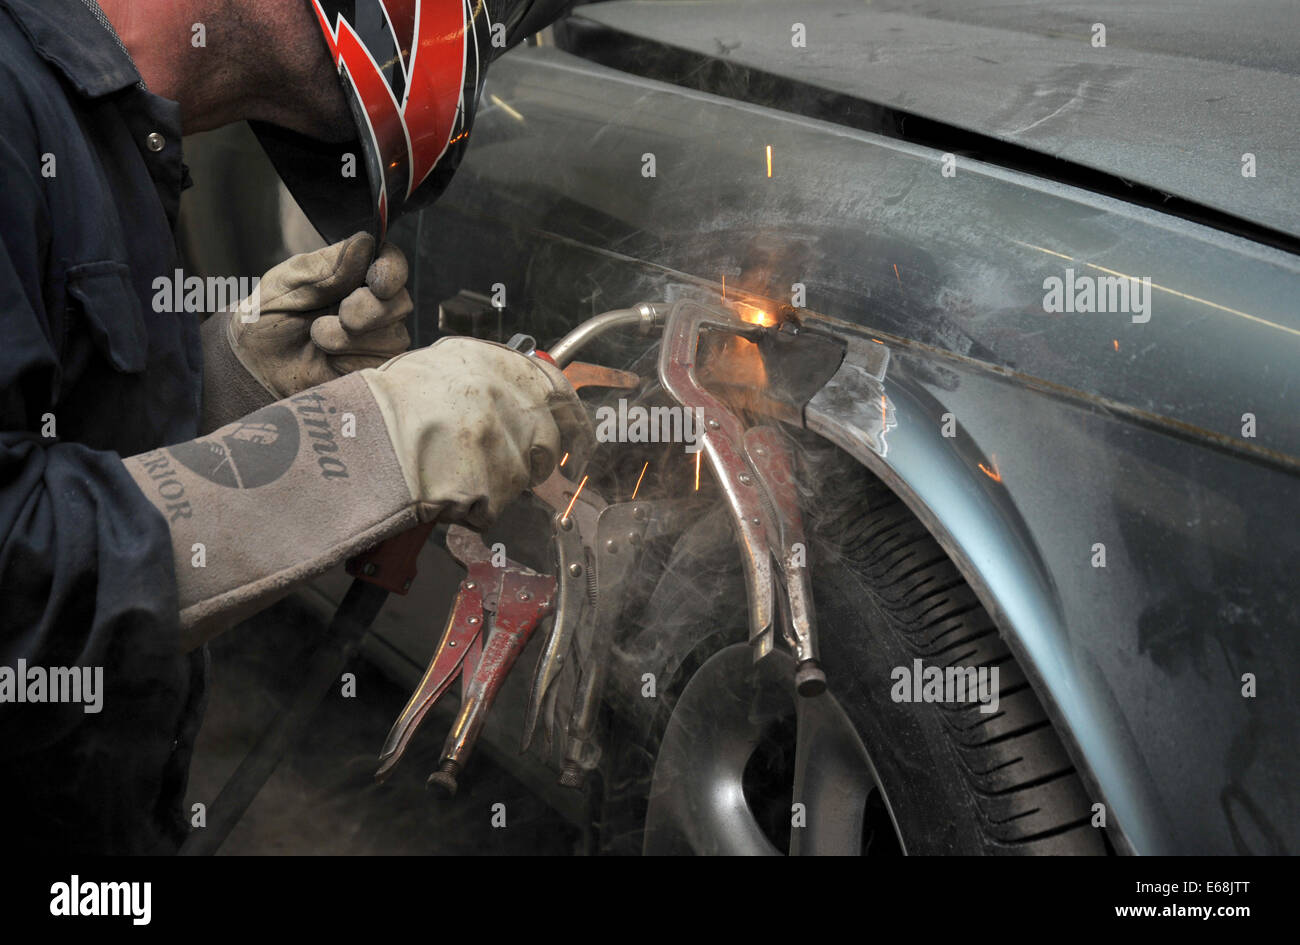 Kfz-Reparatur und Restaurierung - einen Reparatur-Patch in einem Radlauf  Schweißen Stockfotografie - Alamy